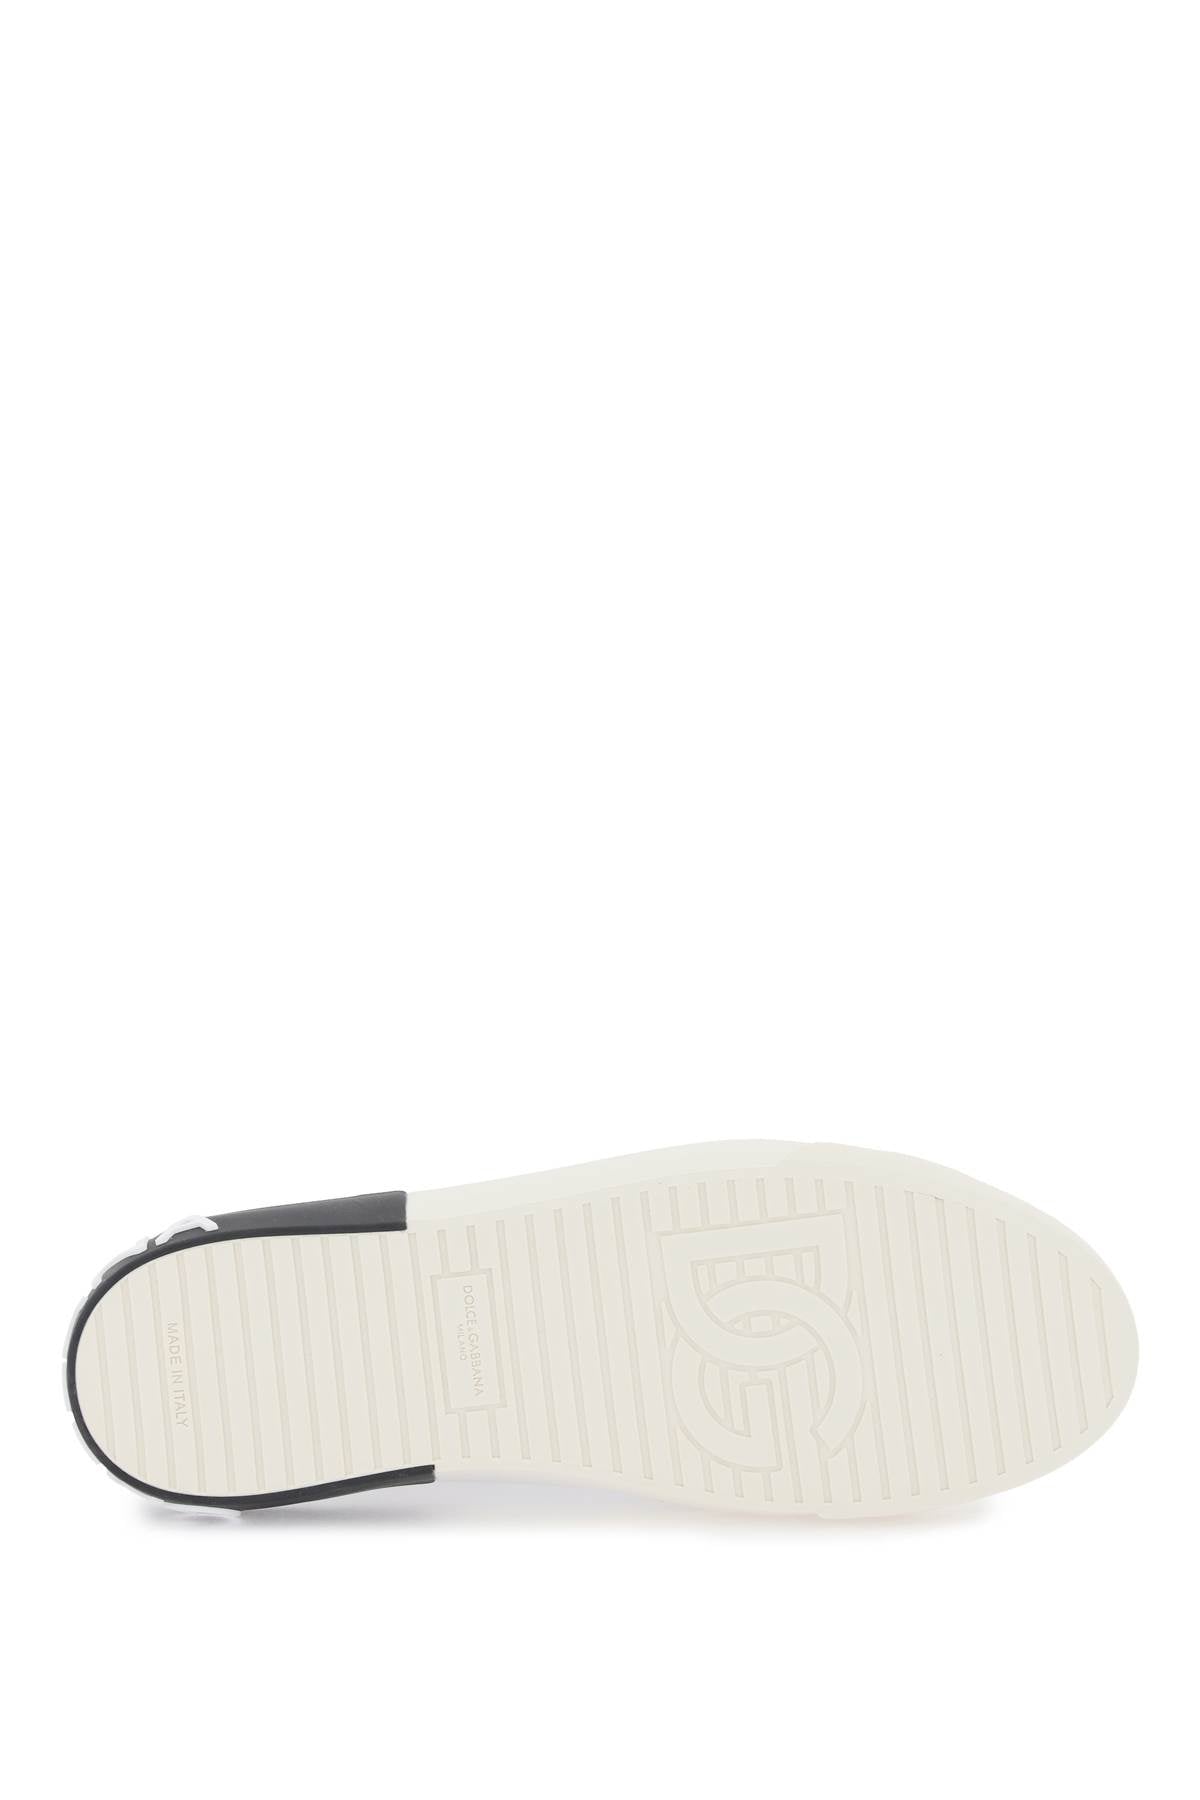 Shop Dolce & Gabbana Nappa Leather Portofino Sneakers In White, Black